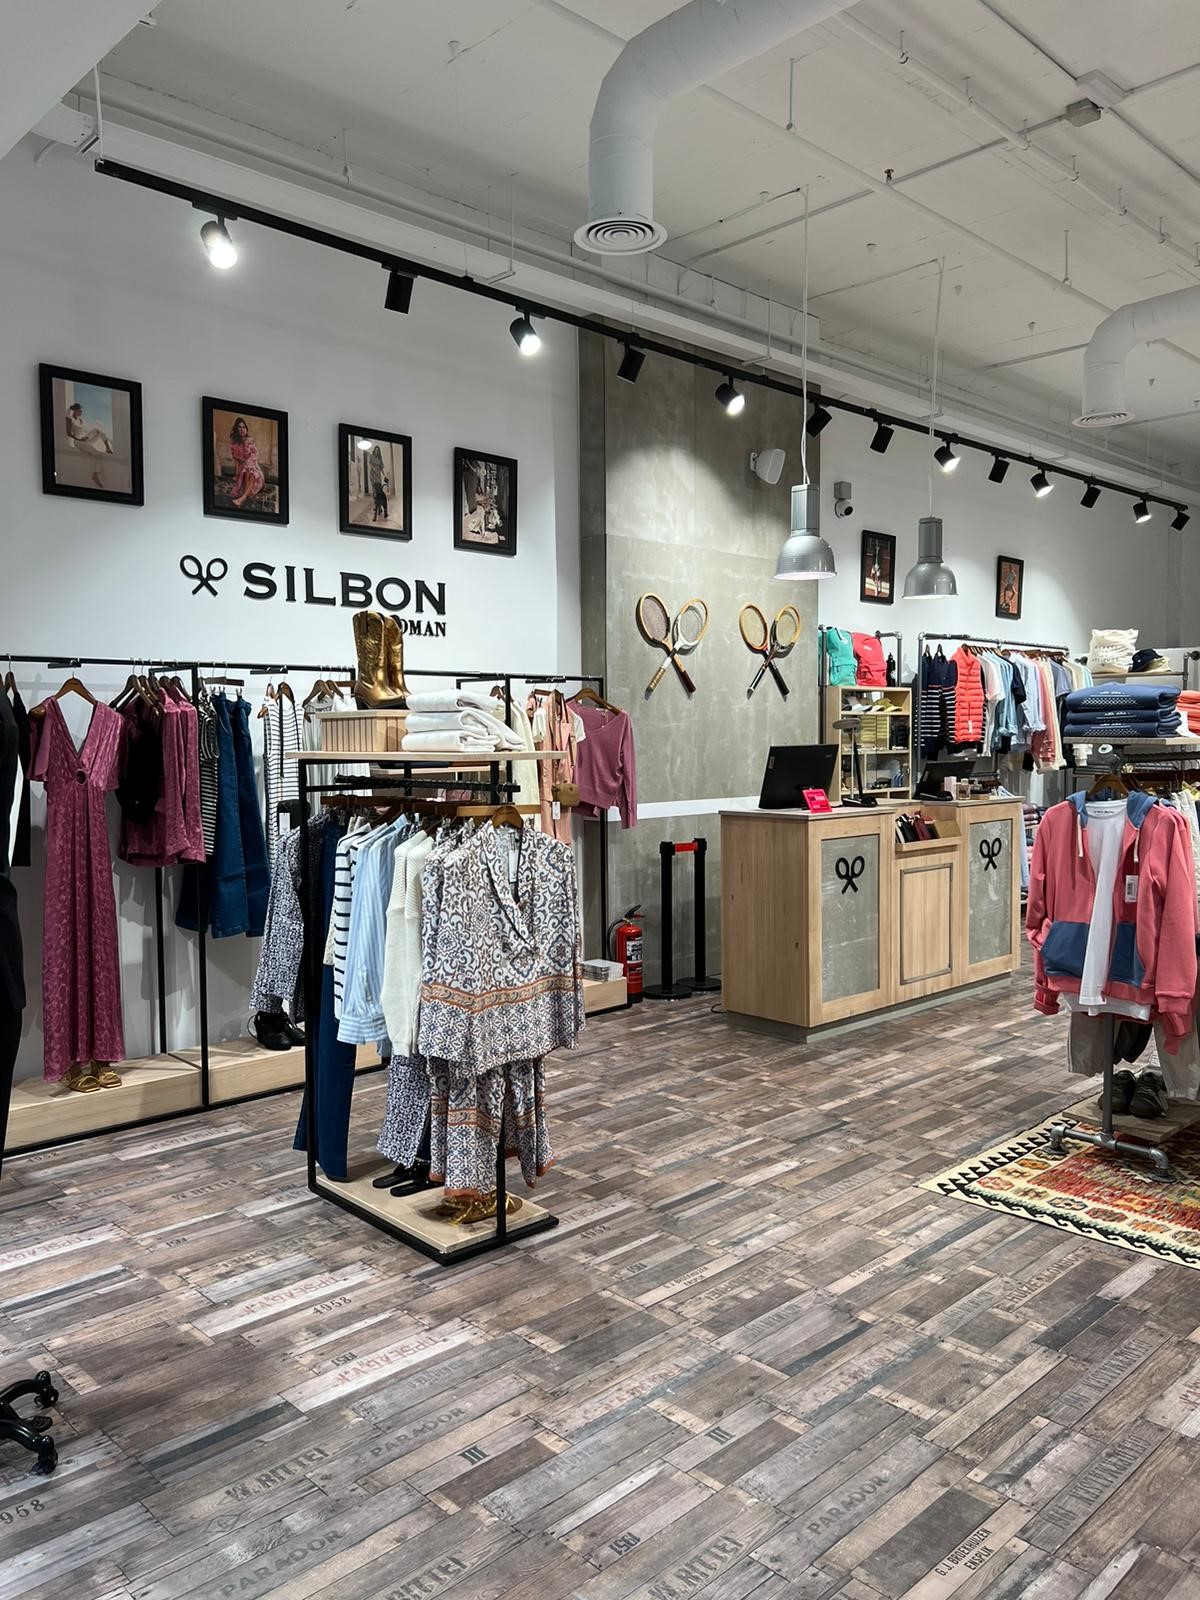 Silbon abre su segundo punto de venta en la localidad madrileña de Pozuelo